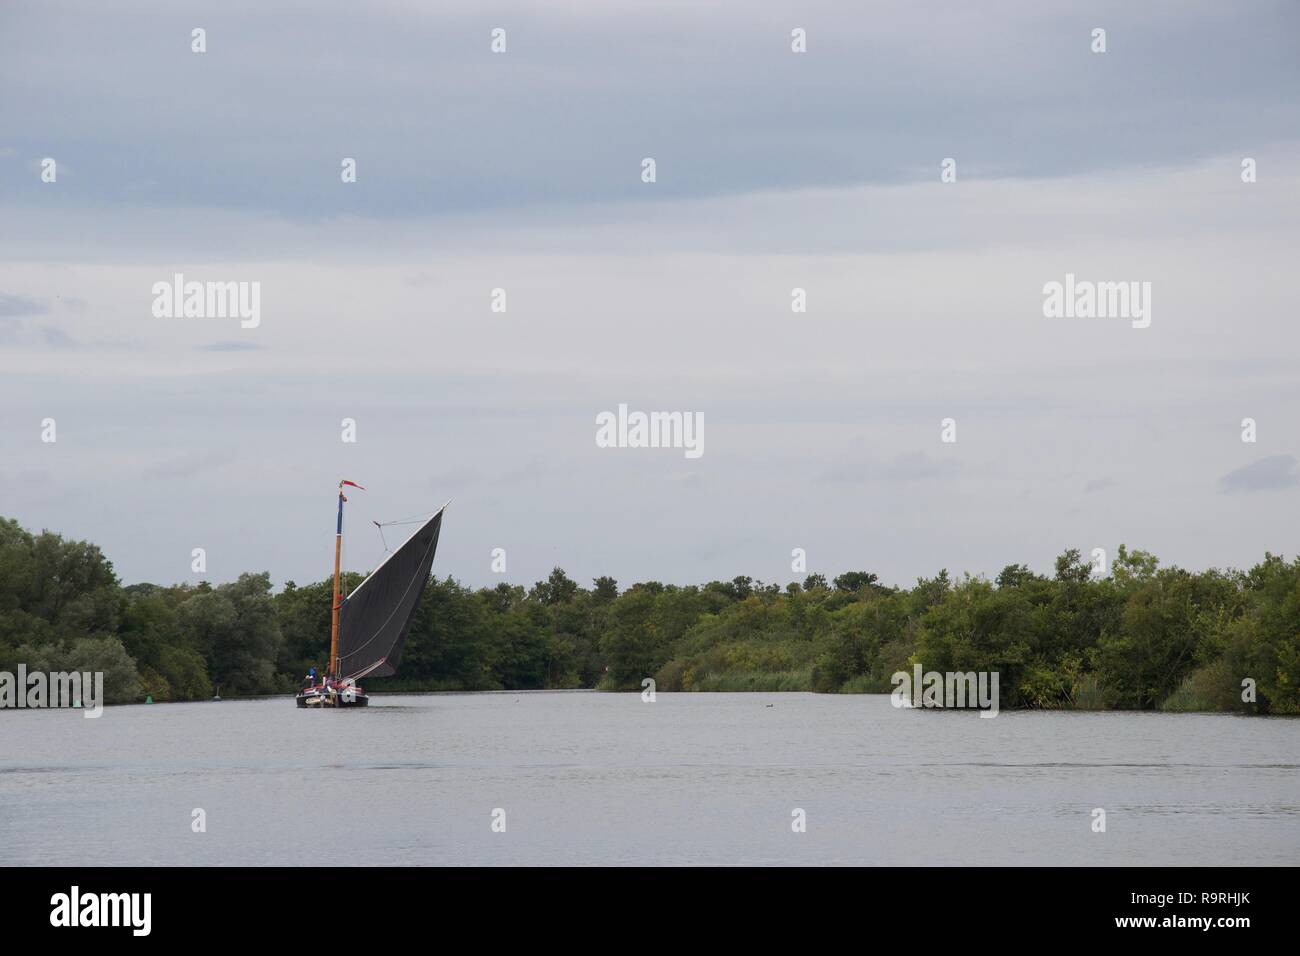 Traditionelle Norfolk wherry, einem Englischen/Britischen Segelboot mit einem großen schwarzen Segel, auf ranworth Breite in der Norfolk Broads, an einem grauen Tag Stockfoto